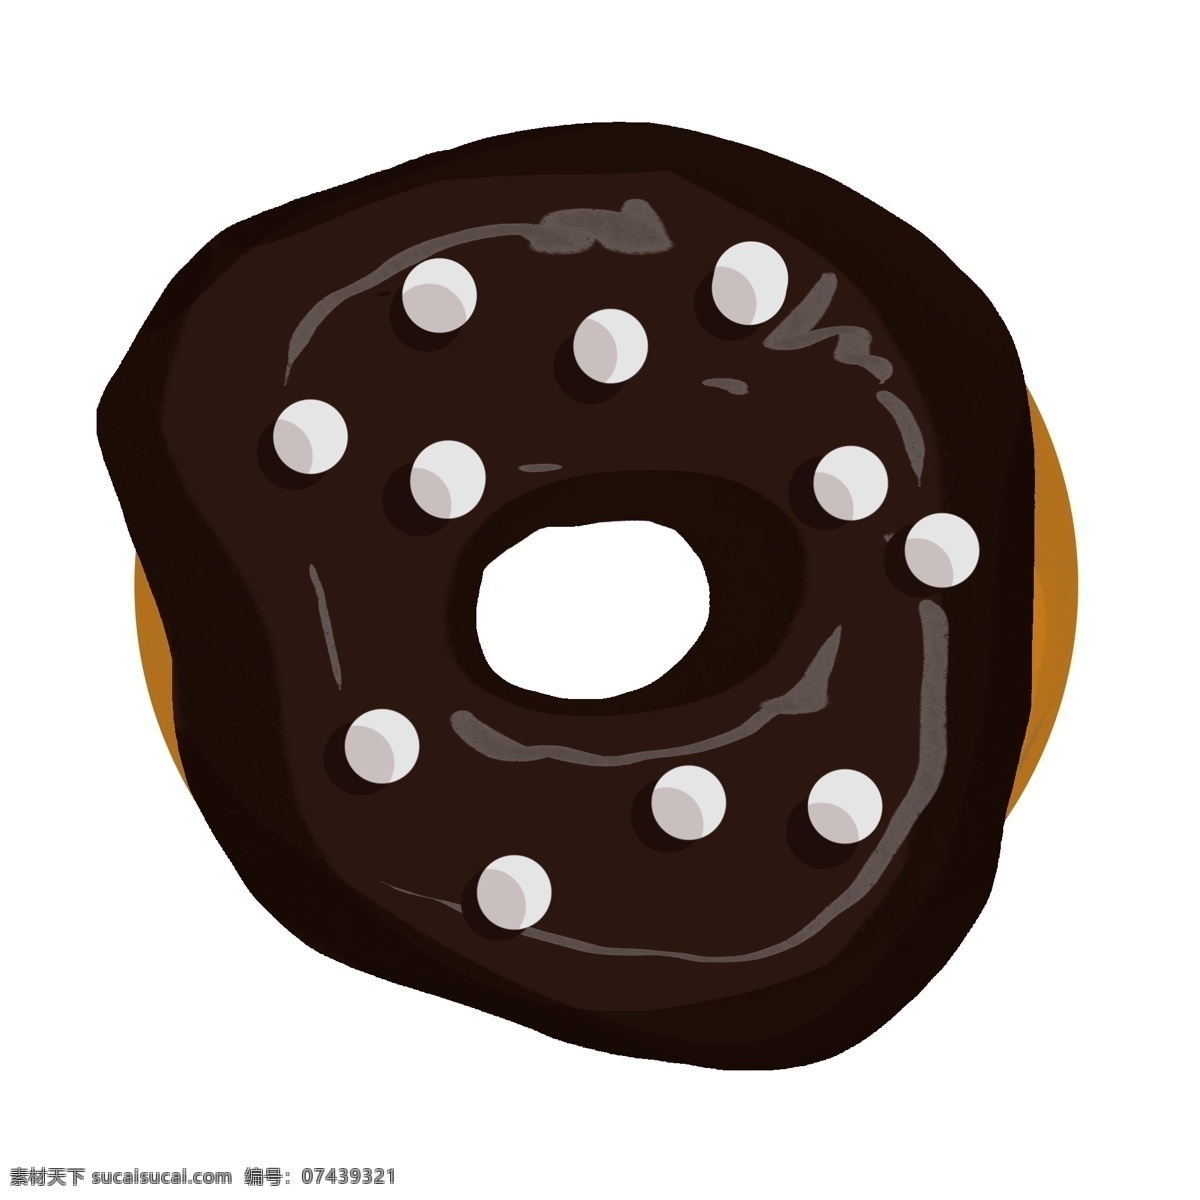 手绘 黑色 甜甜 圈 插画 黑色甜甜圈 美食插画 手绘甜品插画 甜甜圈插画 卡通的甜甜圈 美味的甜甜圈